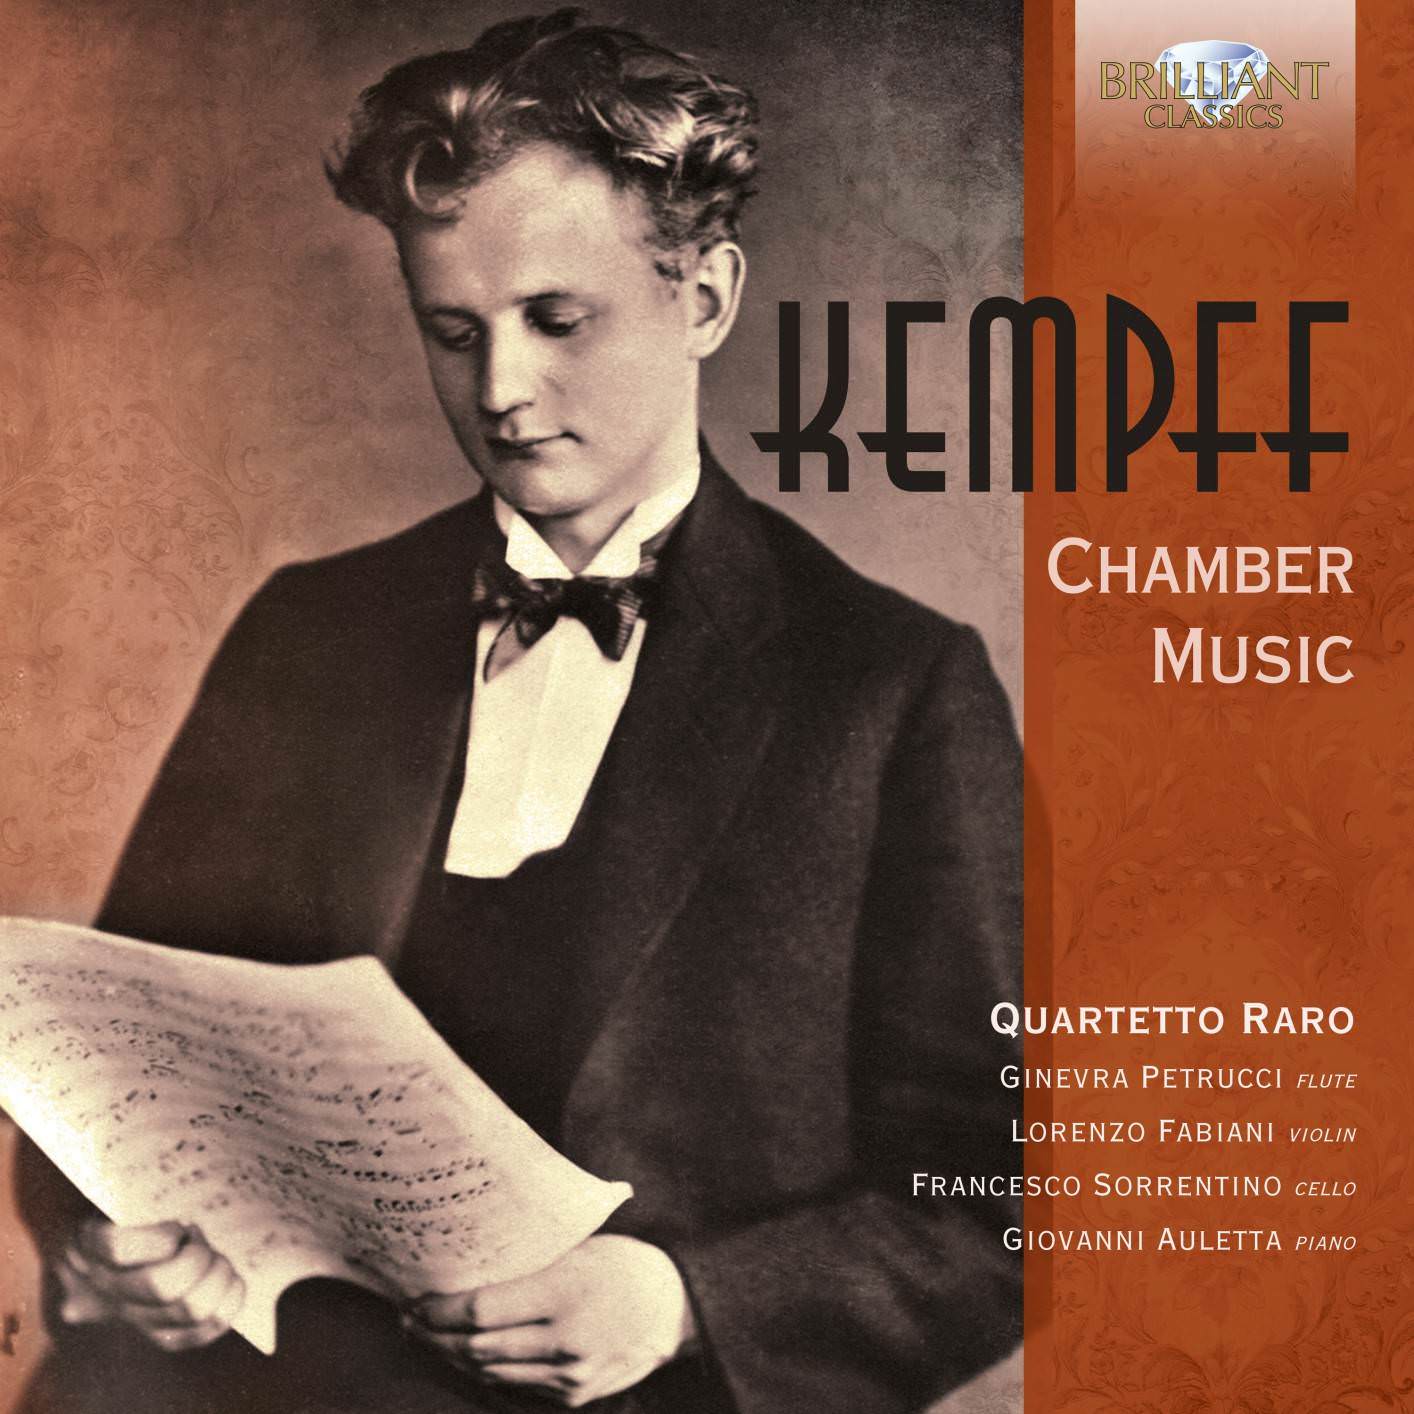 Quartetto Raro – Kempff: Chamber Music (2018) [FLAC 24bit/44,1kHz]